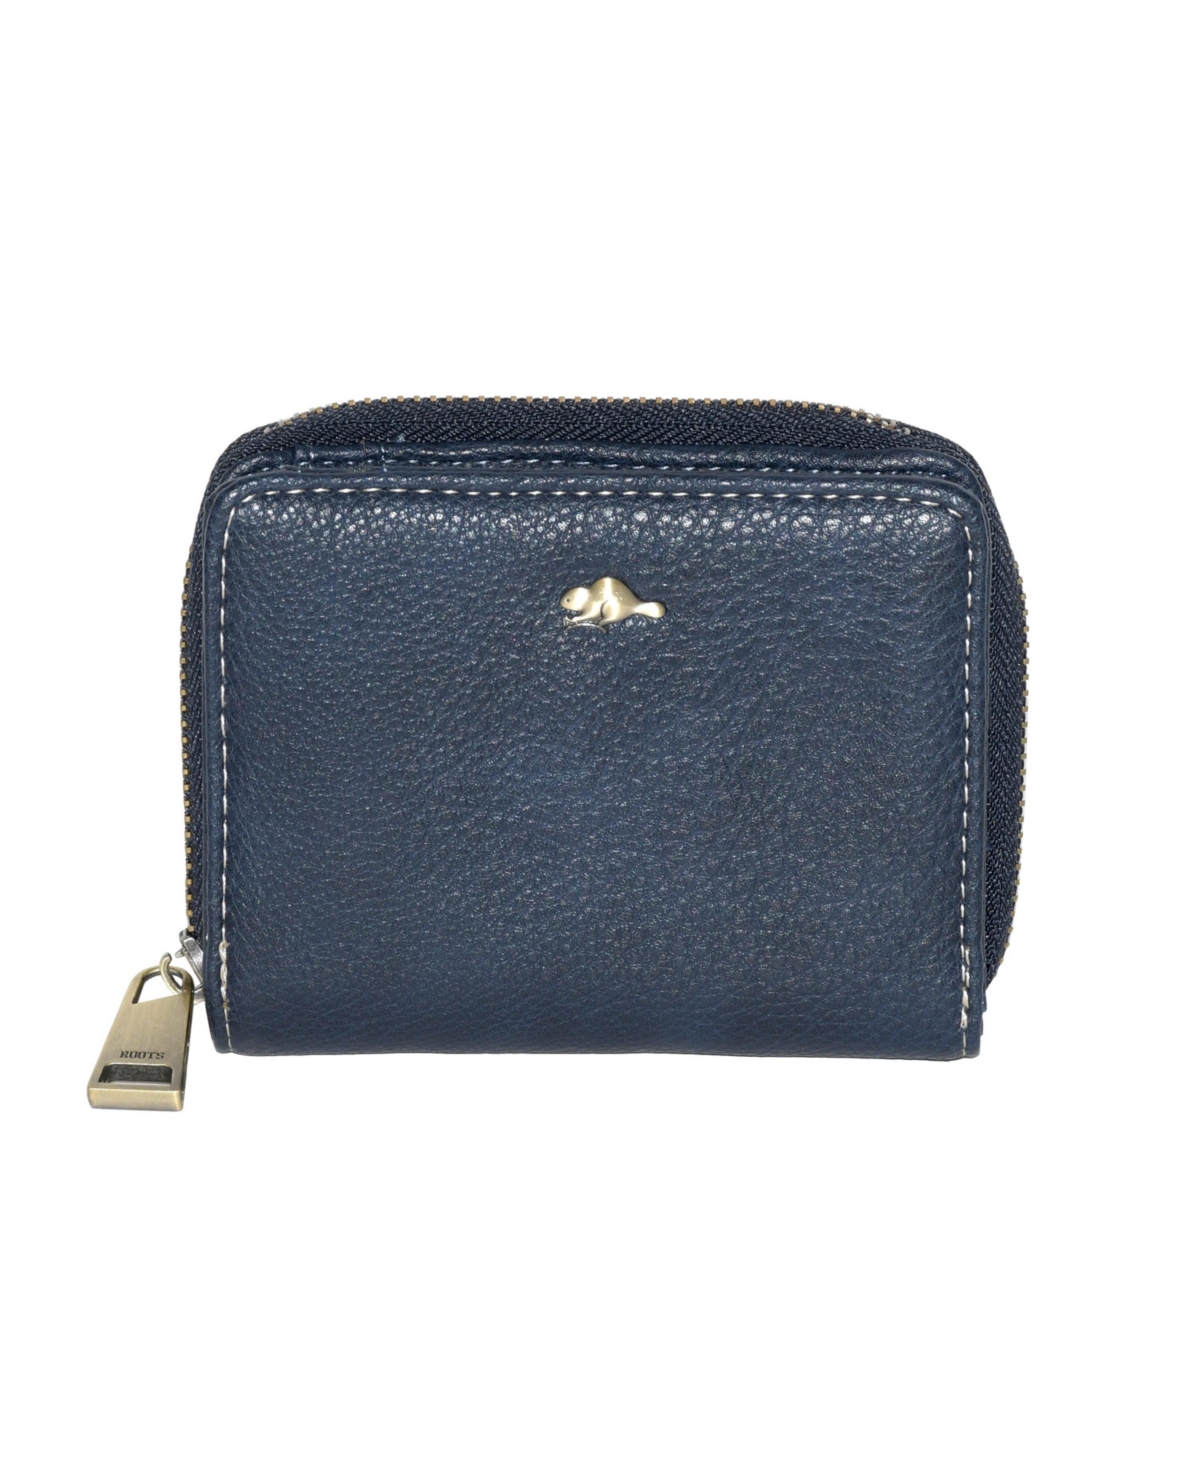 Ladies Compact Zip Around Snap Wallet - Navy